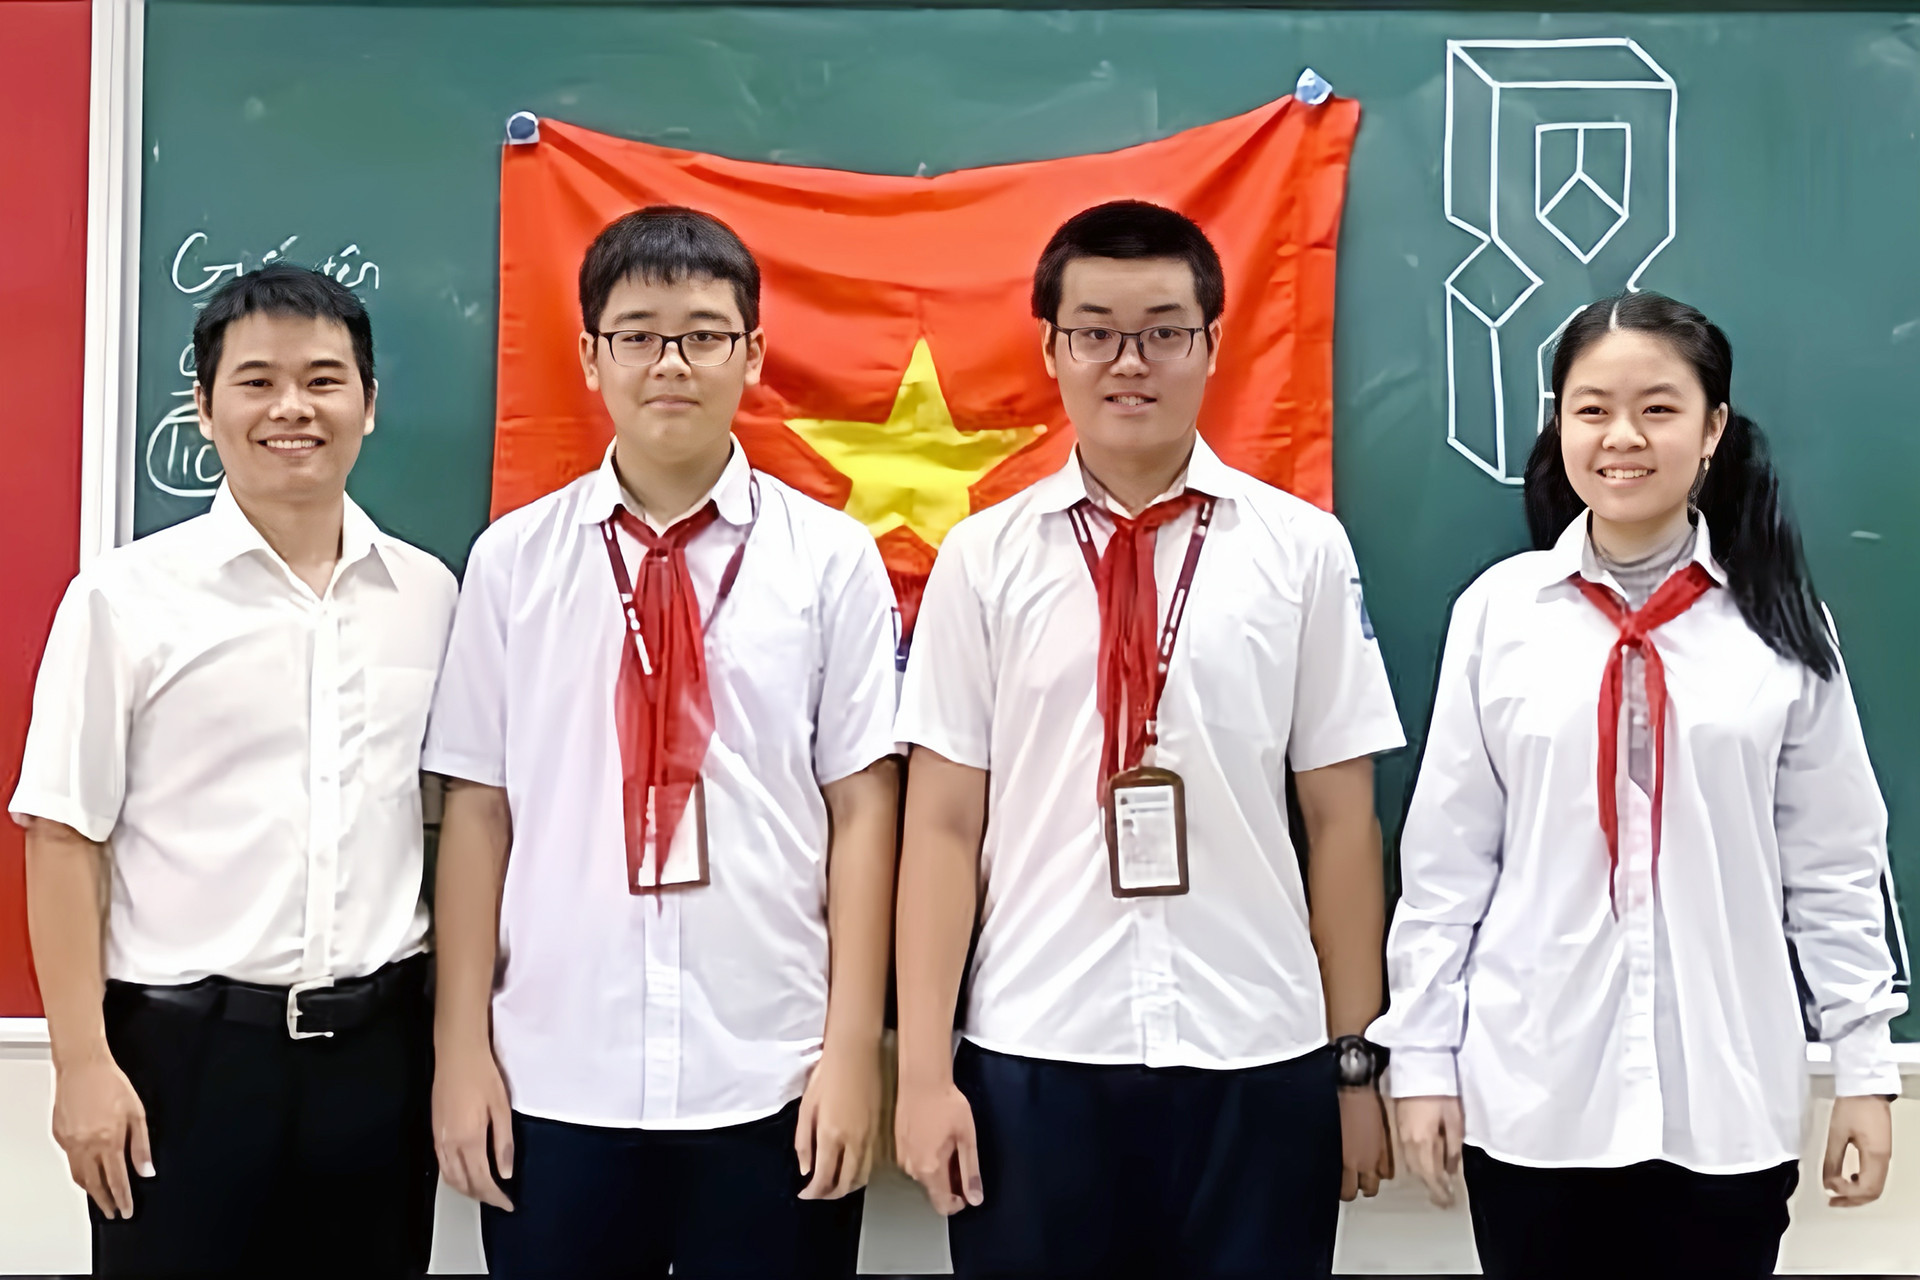 Một lớp học ở Hà Nội có 4 thủ khoa thi tuyển sinh lớp 10, trong đó có 1 thủ khoa 'kép' - Ảnh 1